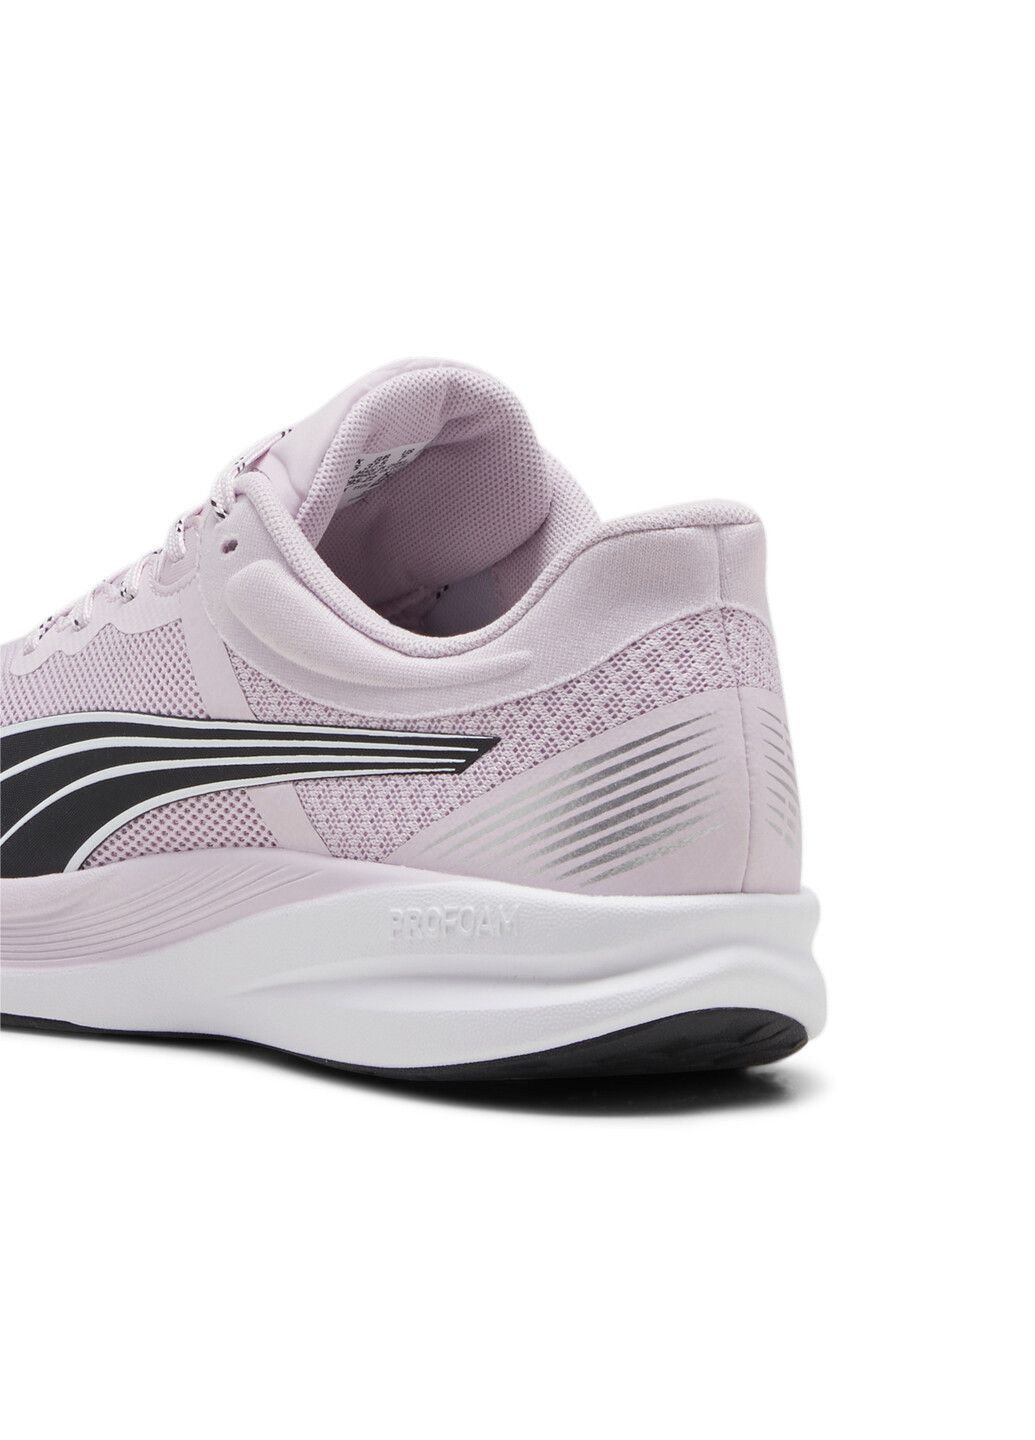 Пурпурные всесезонные кроссовки redeem profoam running shoes Puma